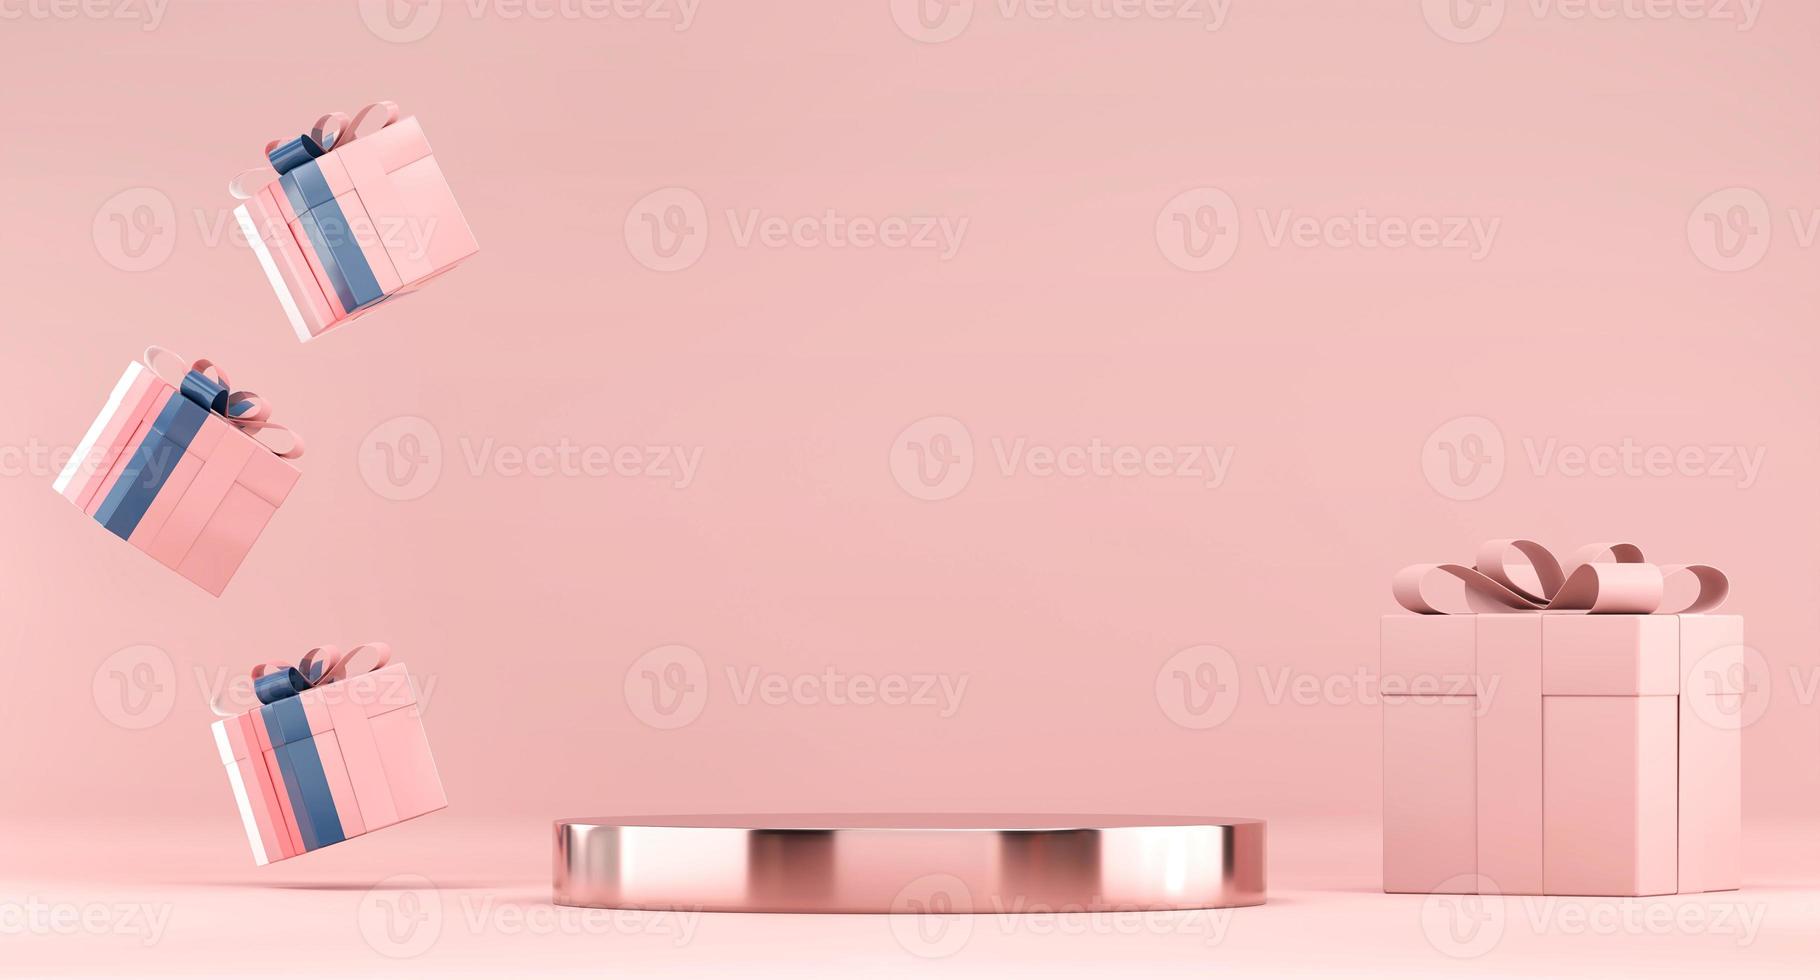 scen podium plattform mockup för produktvisning foto